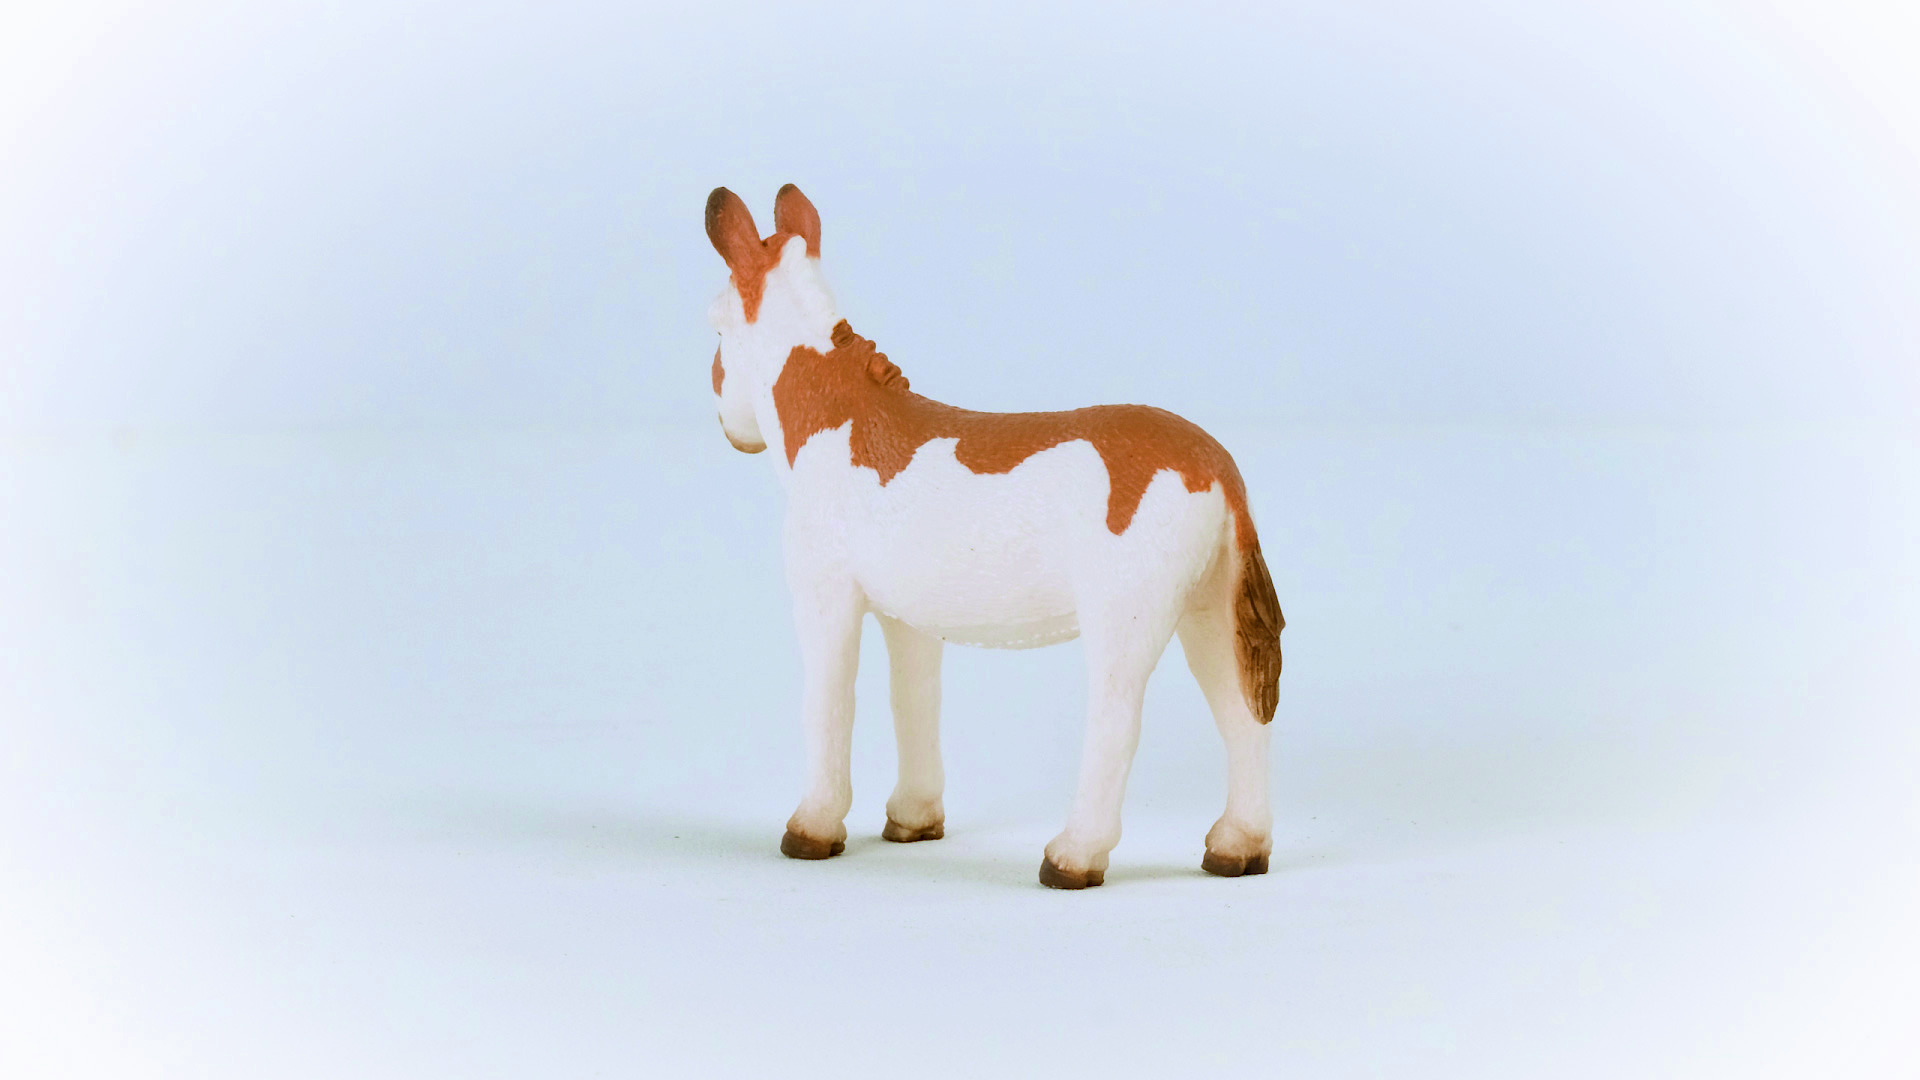 SCHLEICH 13961 Spielfigur Weiß/Braun gefleckt Esel, Amerikanischer